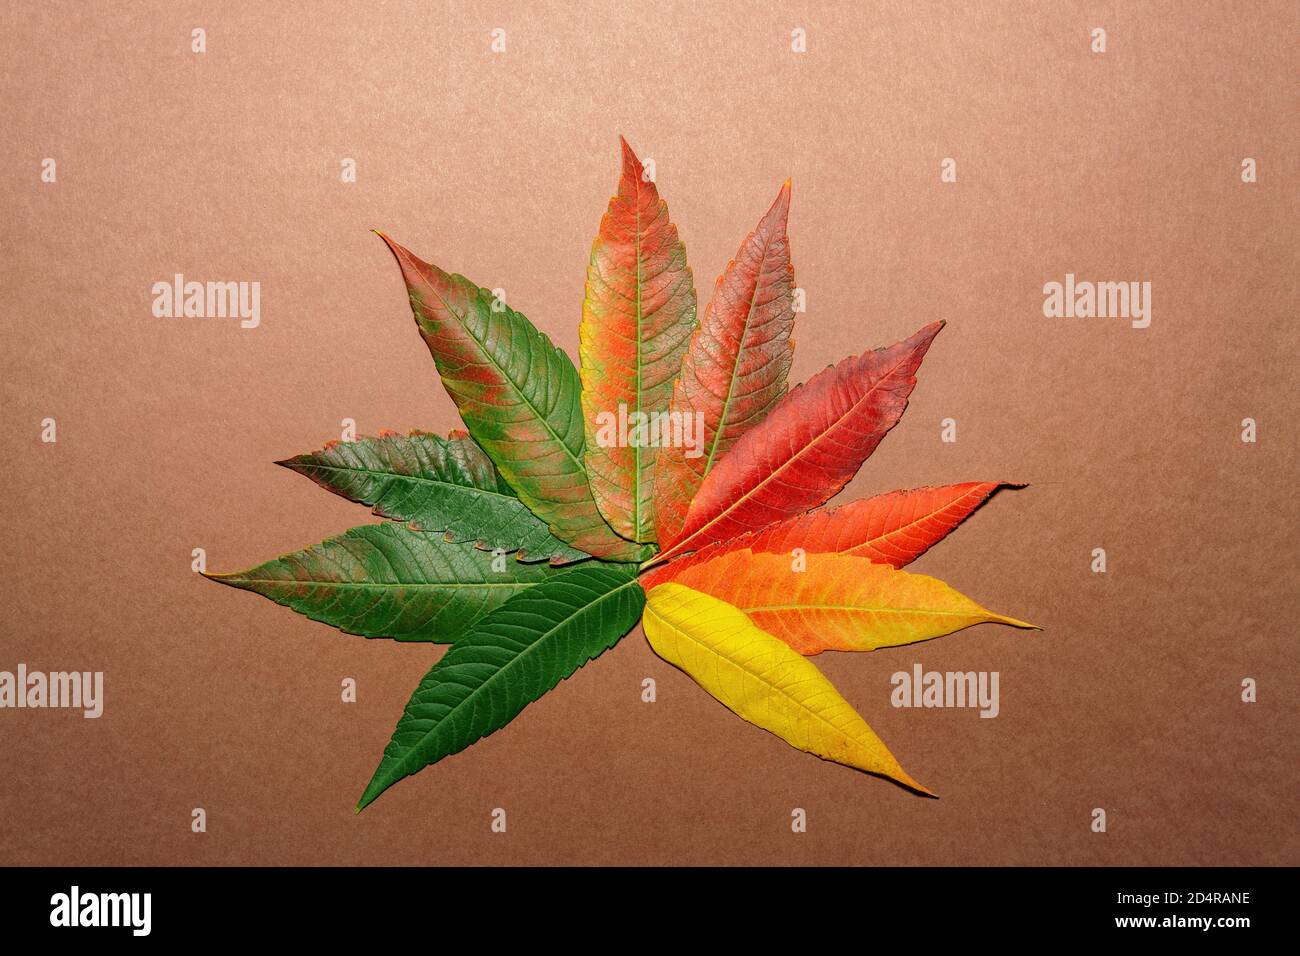 Feuille d'automne faite avec des feuilles colorées d'automne Banque D'Images